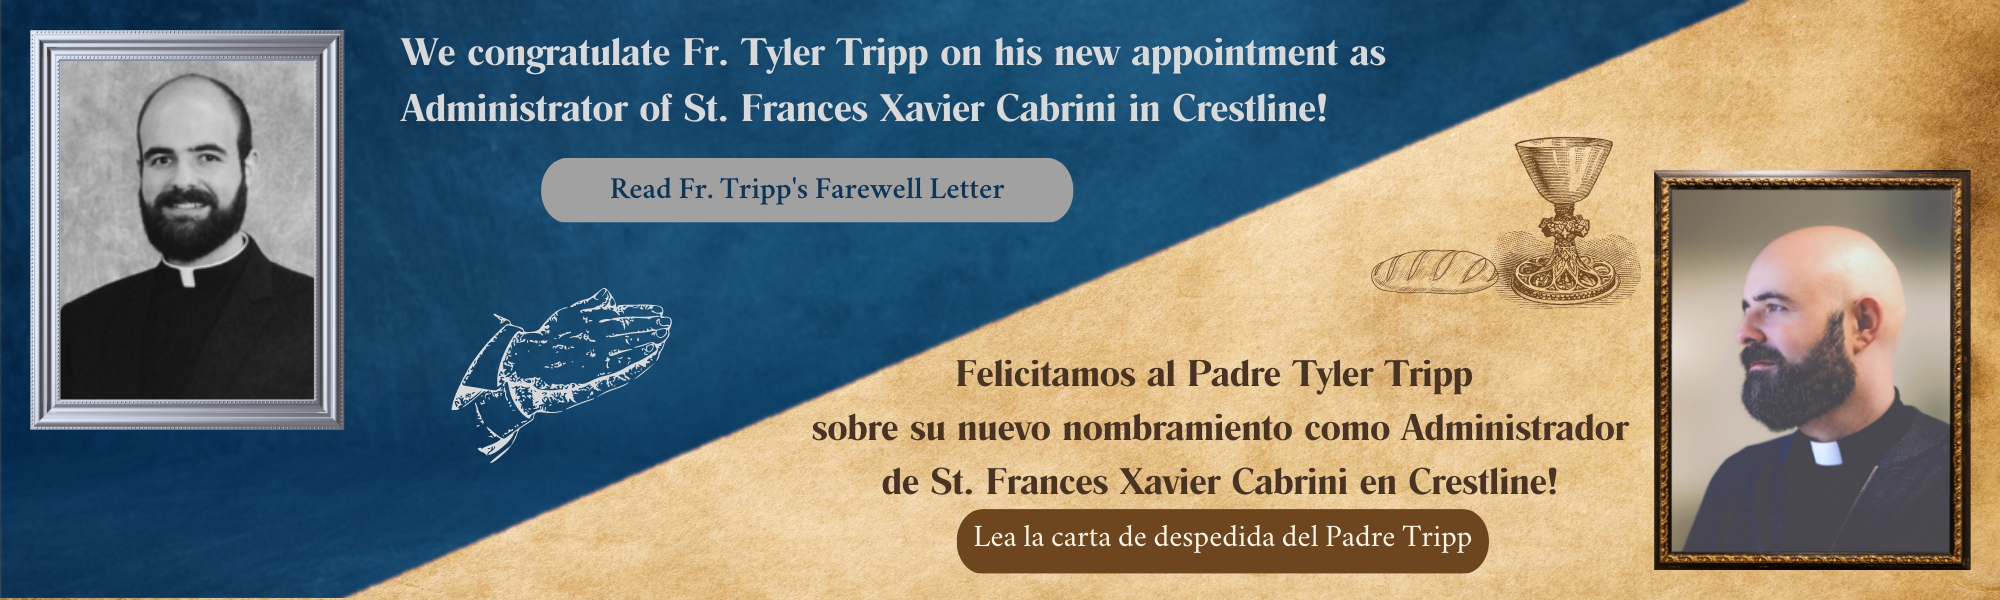 Fr. Tyler Farewell Letters